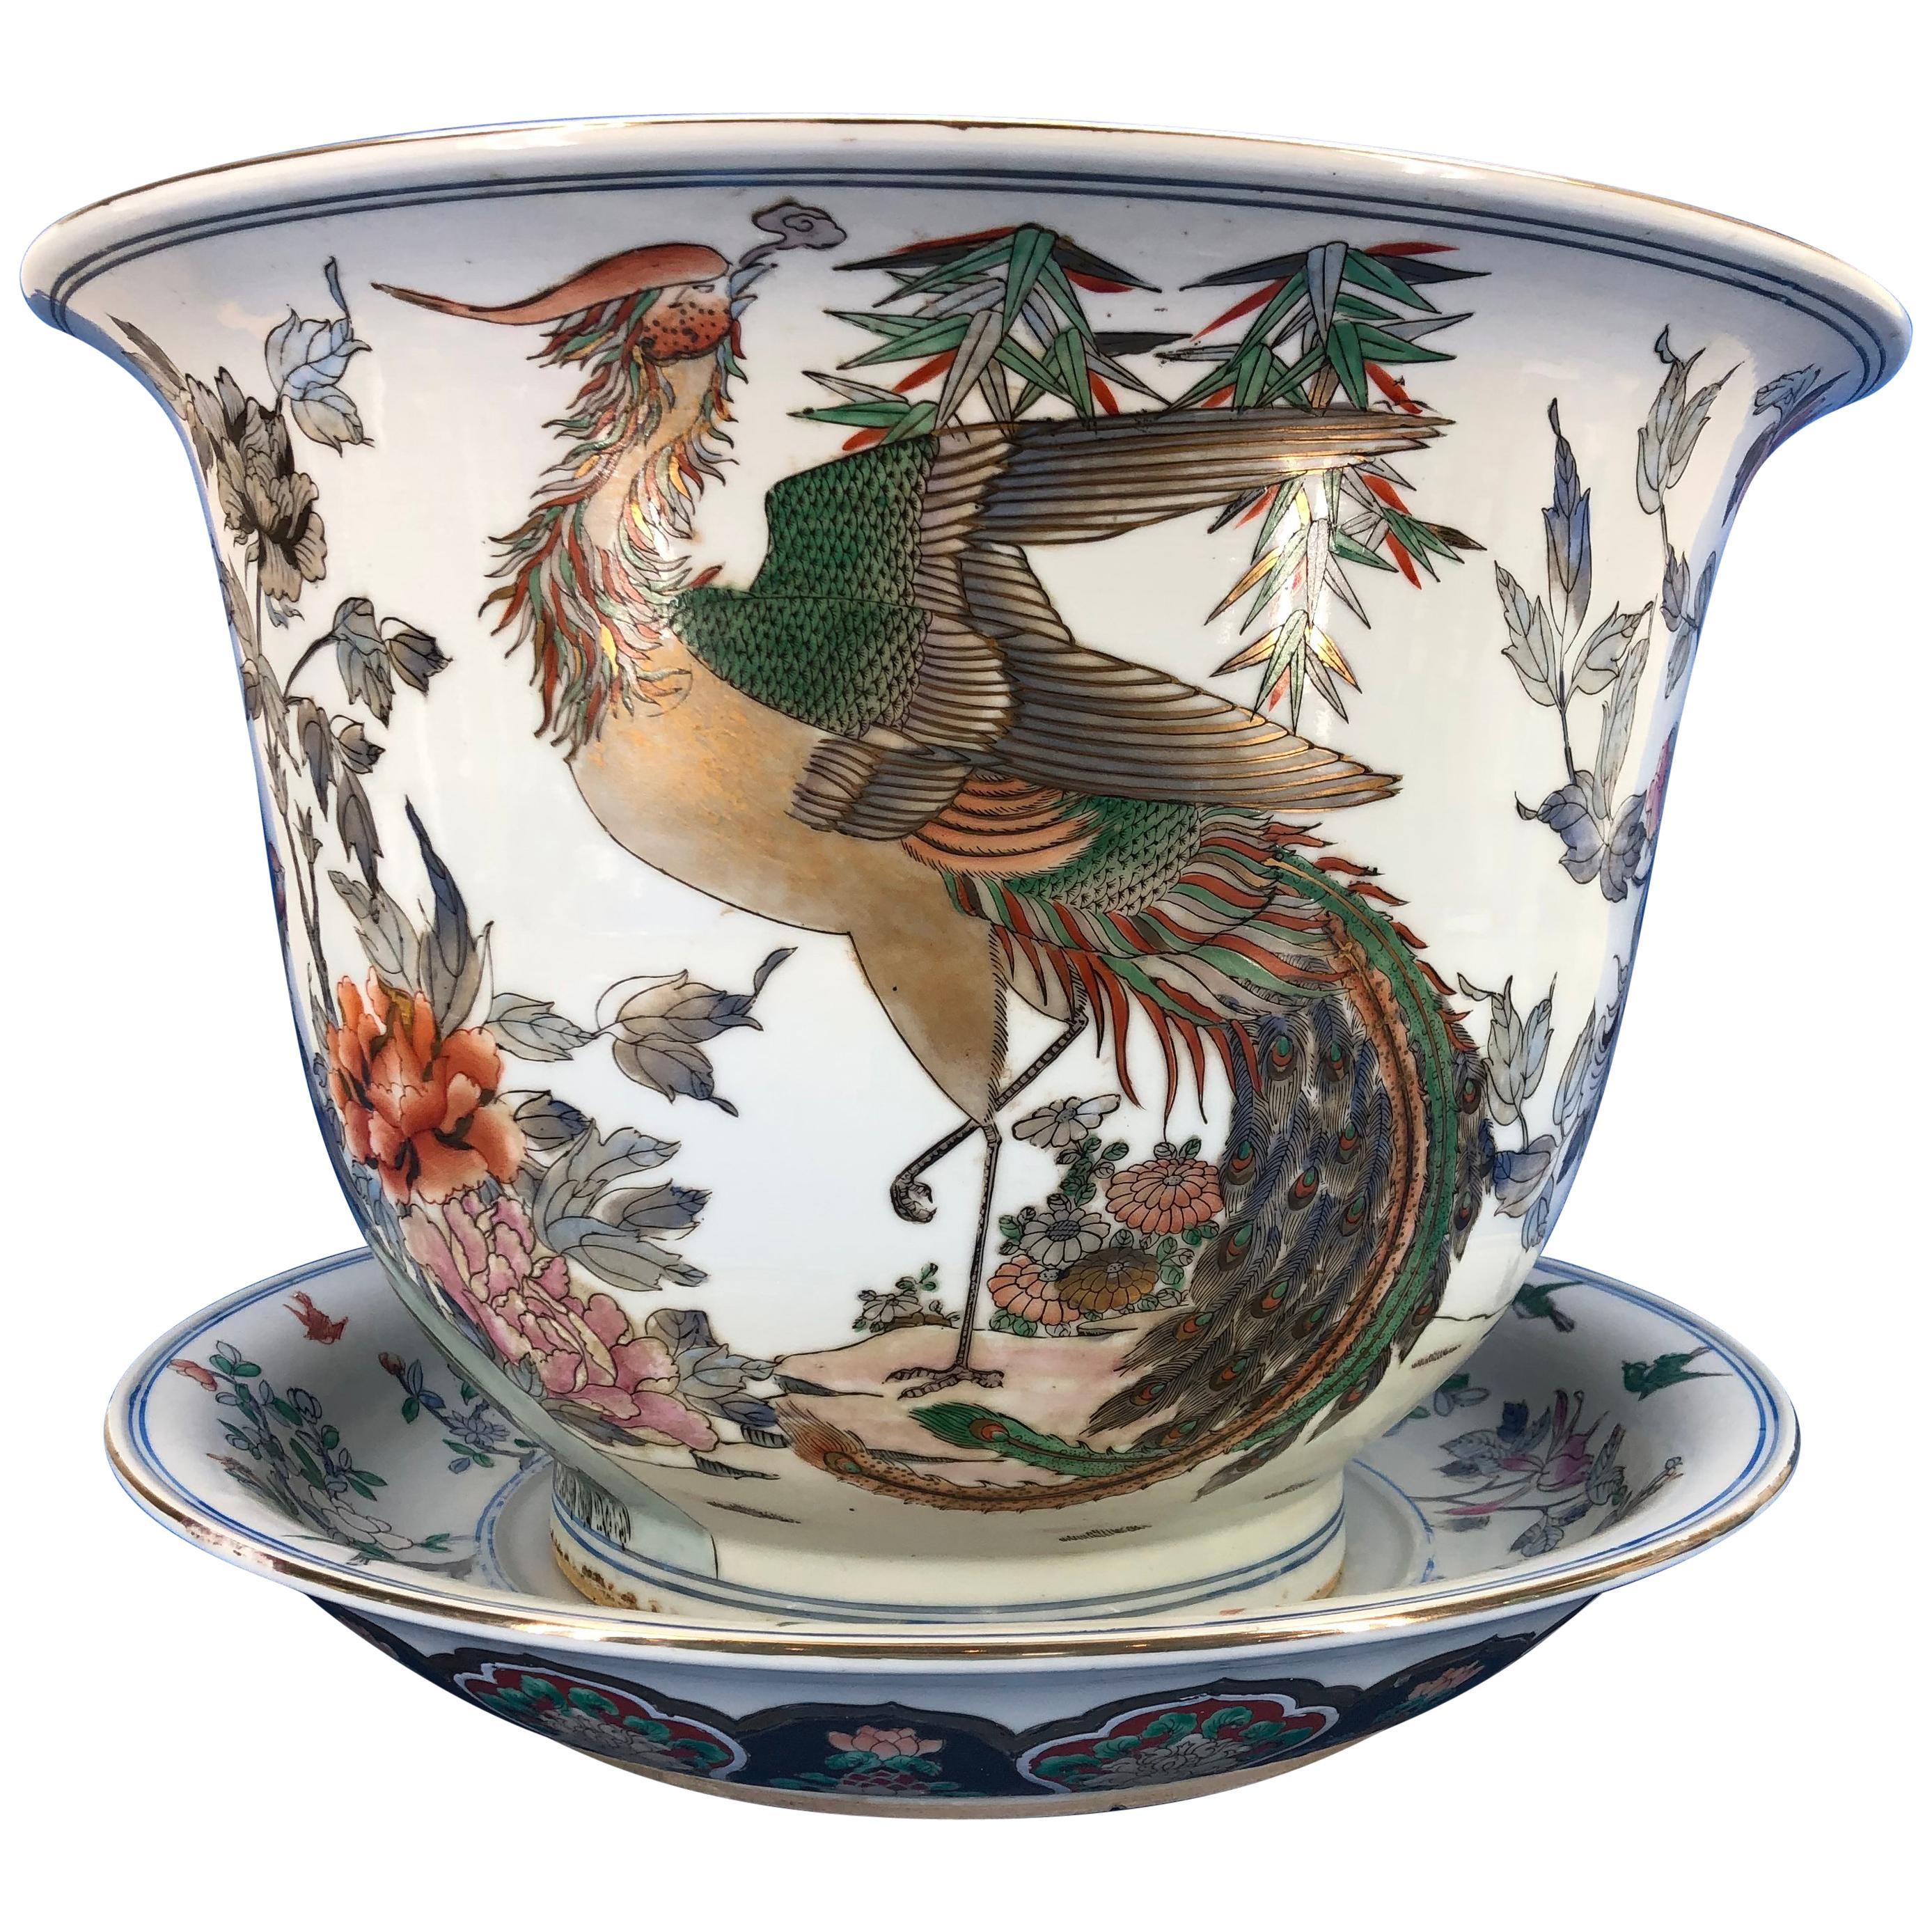 Grande urne jardinière et chargeur en porcelaine chinoise peinte à la main

La porcelaine est décorée de magnifiques scènes de grues, d'oiseaux, de fleurs et de feuilles d'acanthe. Les couleurs sont le vert, le rouge, l'orange, l'or et le bleu.